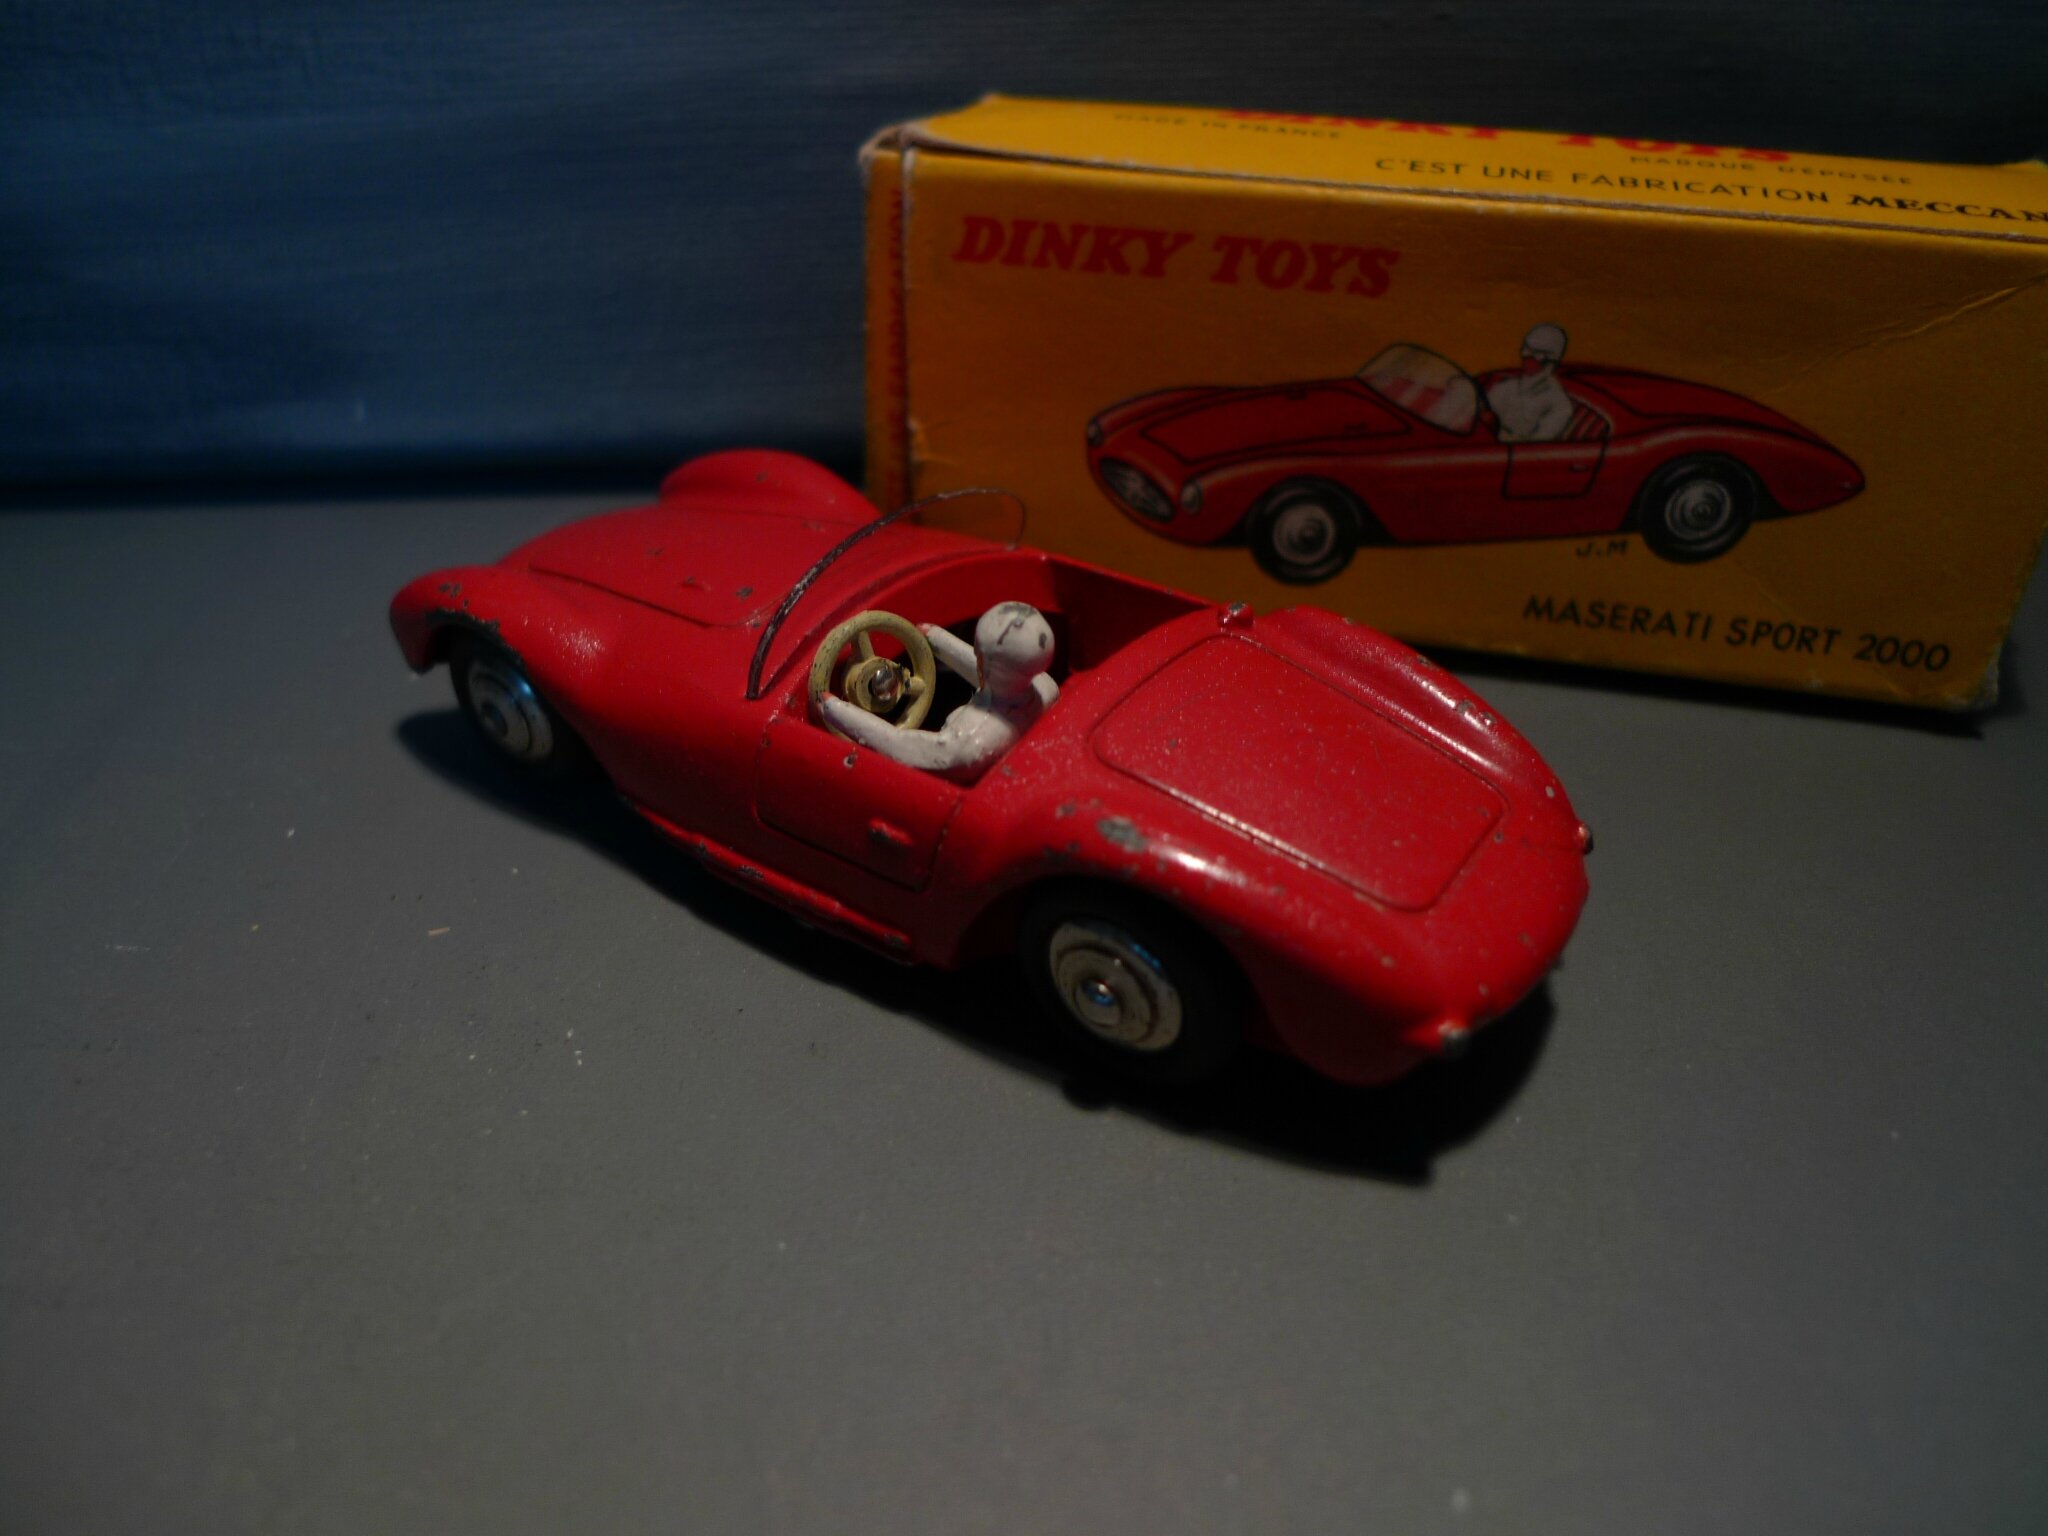 80 ans de Dinky Toys. Souvenirs d'en France